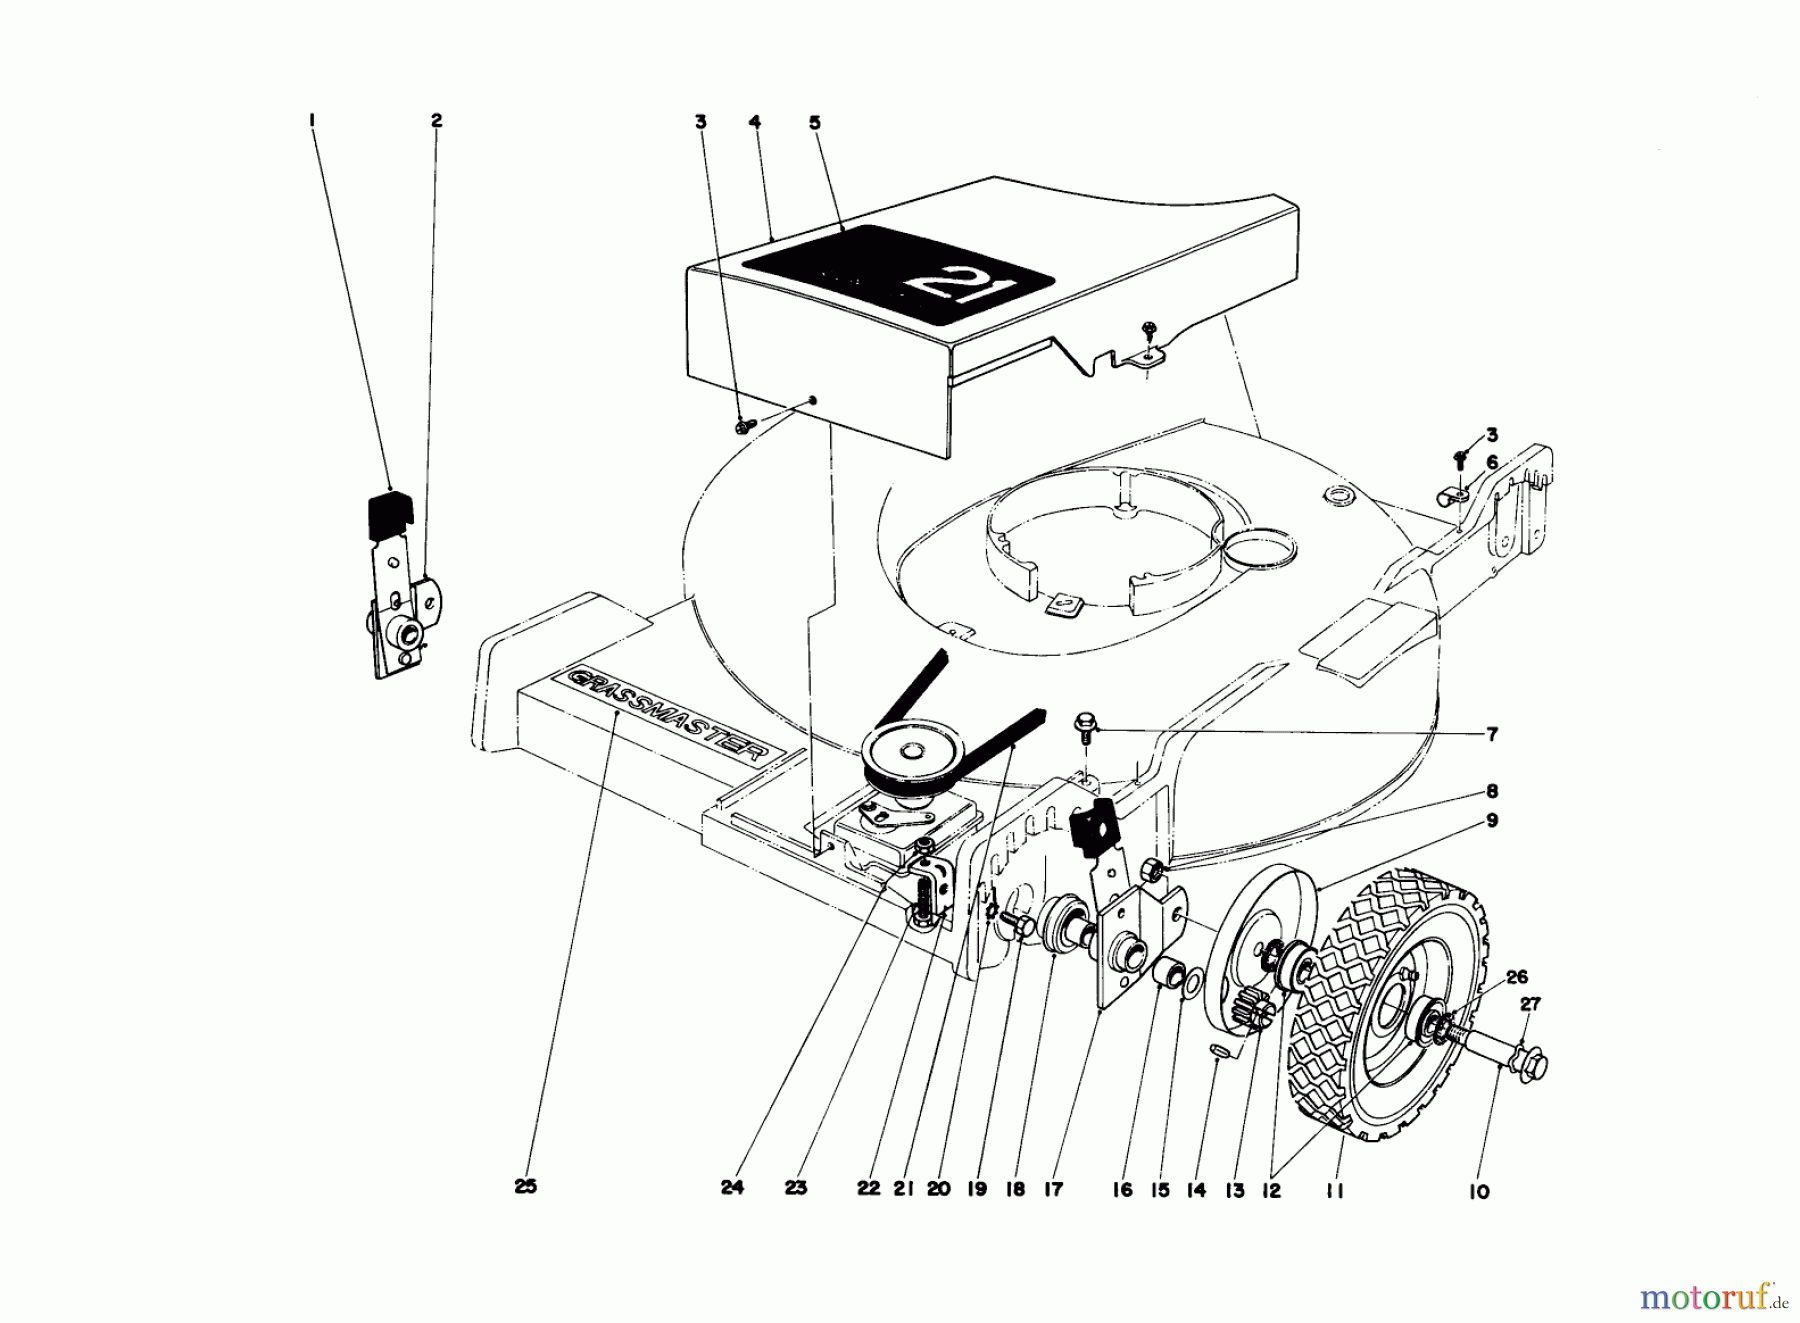  Toro Neu Mowers, Walk-Behind Seite 1 20673 - Toro Lawnmower, 1976 (6000001-6999999) FRONT WHEEL AND PIVOT ARM ASSEMBLY